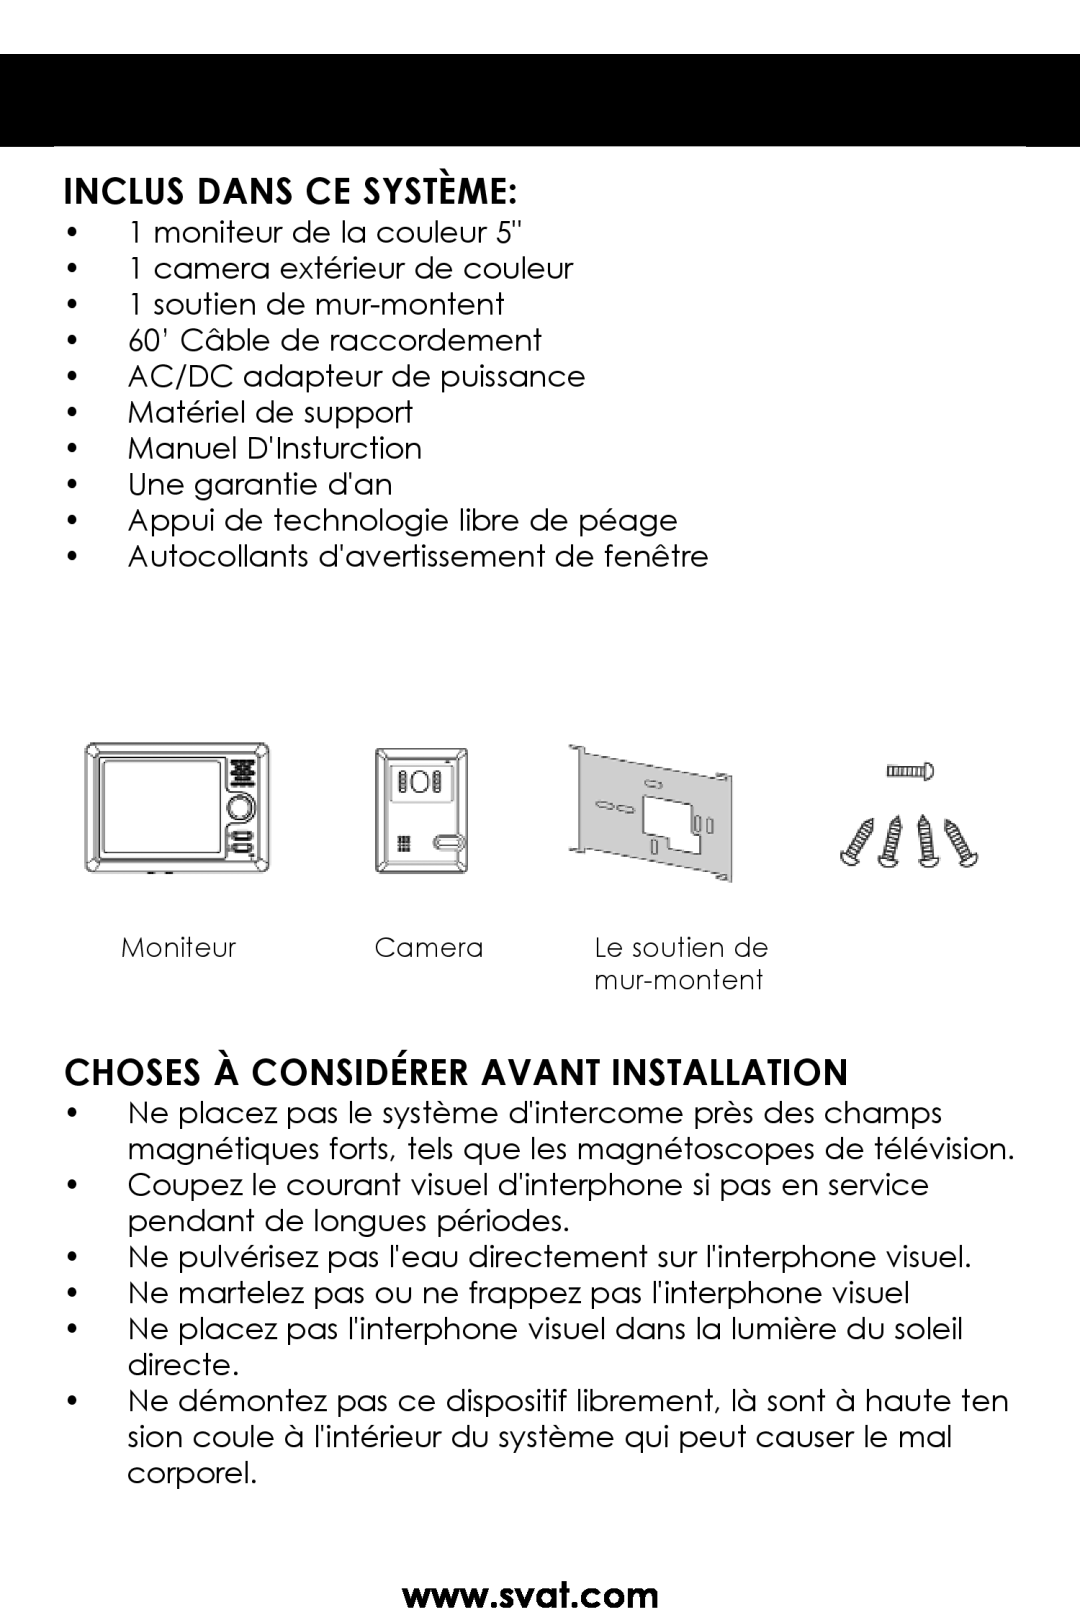 SVAT Electronics VISS7500 user manual Inclus Dans Ce Système, Choses À Considérer Avant Installation 